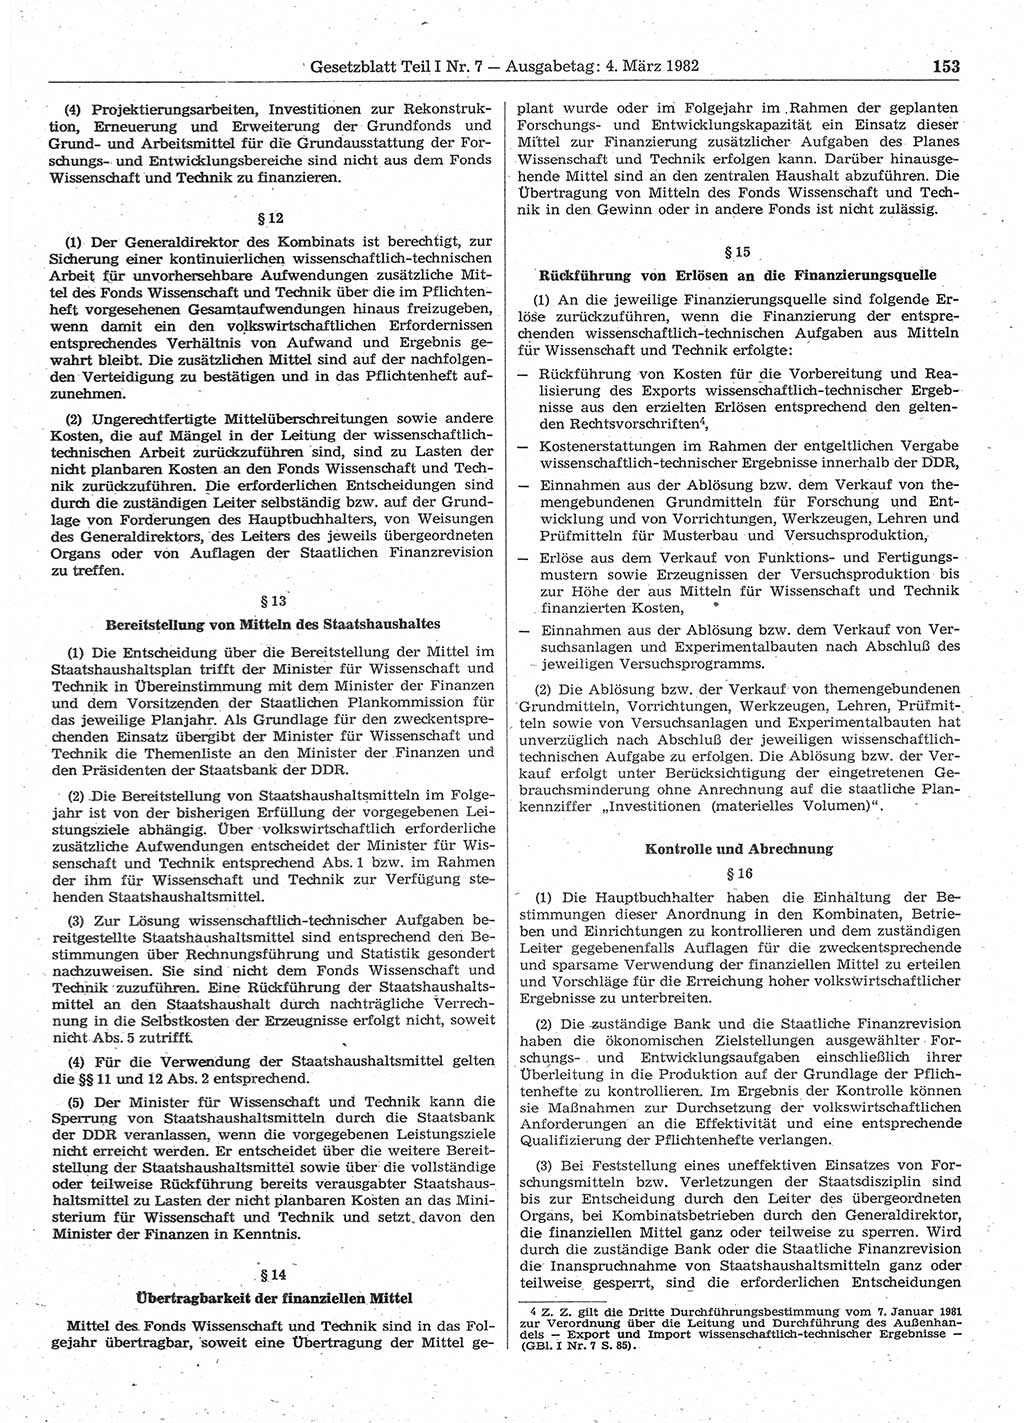 Gesetzblatt (GBl.) der Deutschen Demokratischen Republik (DDR) Teil Ⅰ 1982, Seite 153 (GBl. DDR Ⅰ 1982, S. 153)